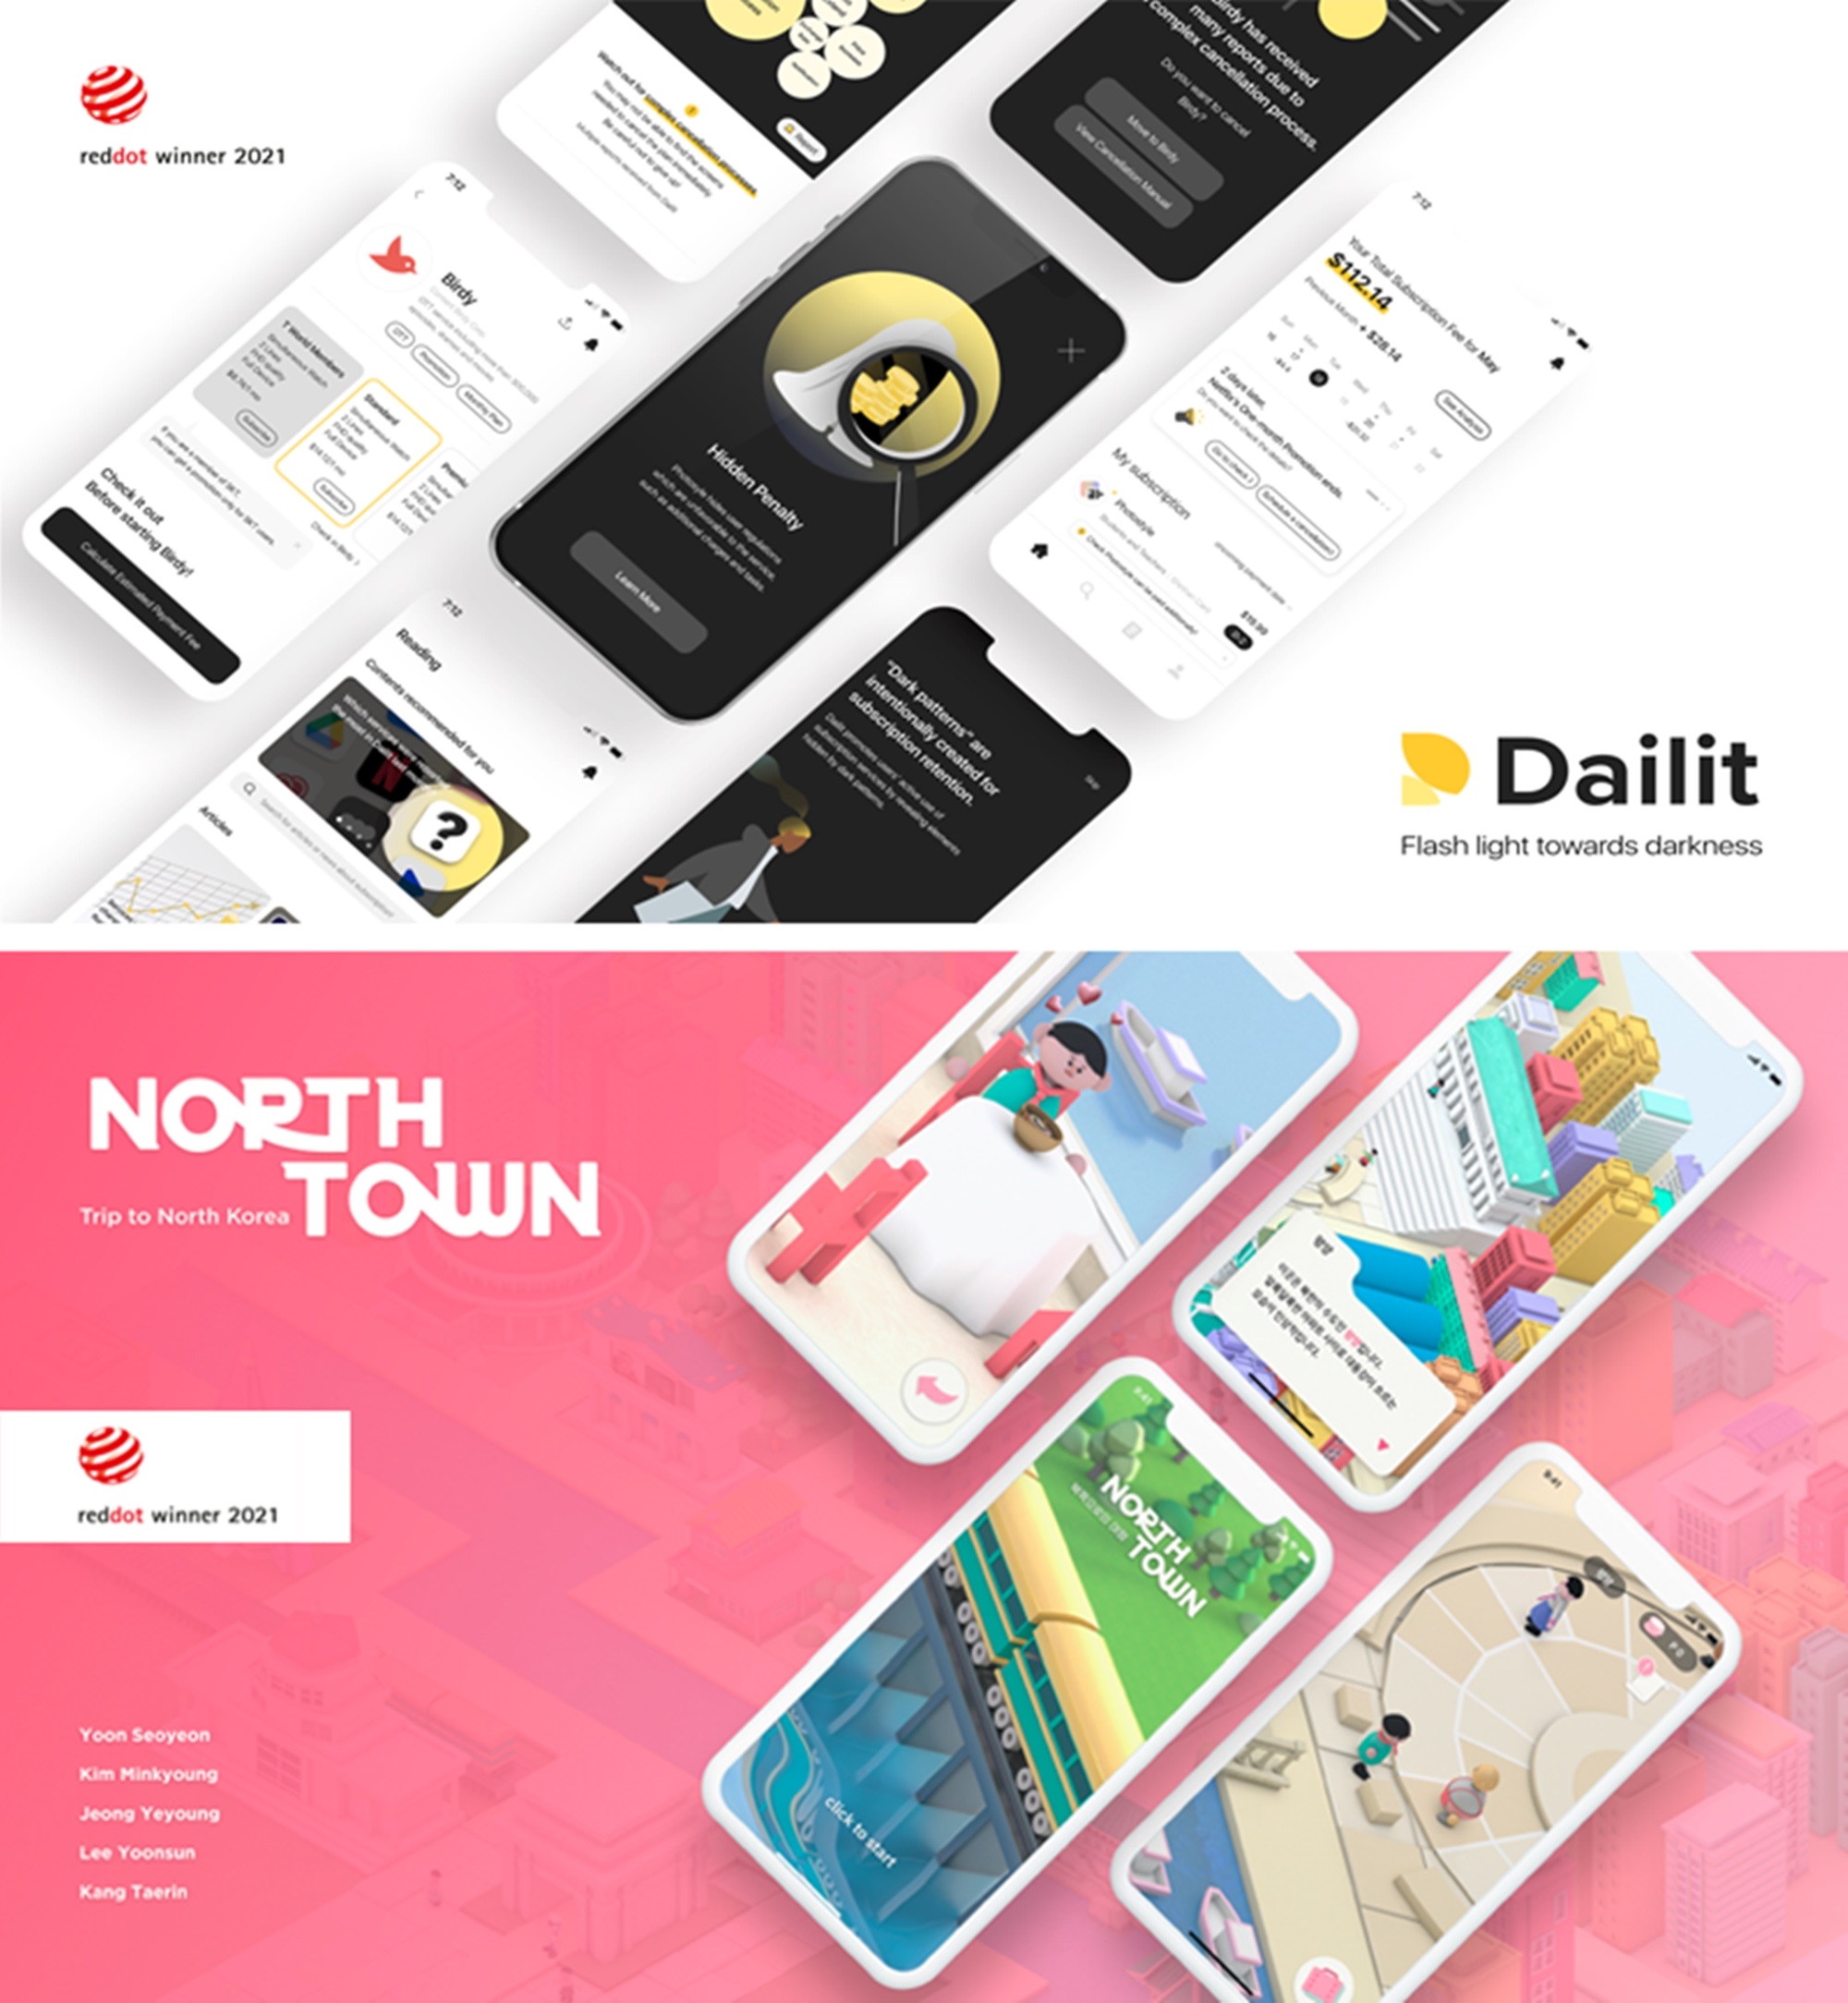 ▲Red Dot Award를 수상한 Dailit 프로젝트 작품(위)과 North Town 프로젝트 작품(아래)